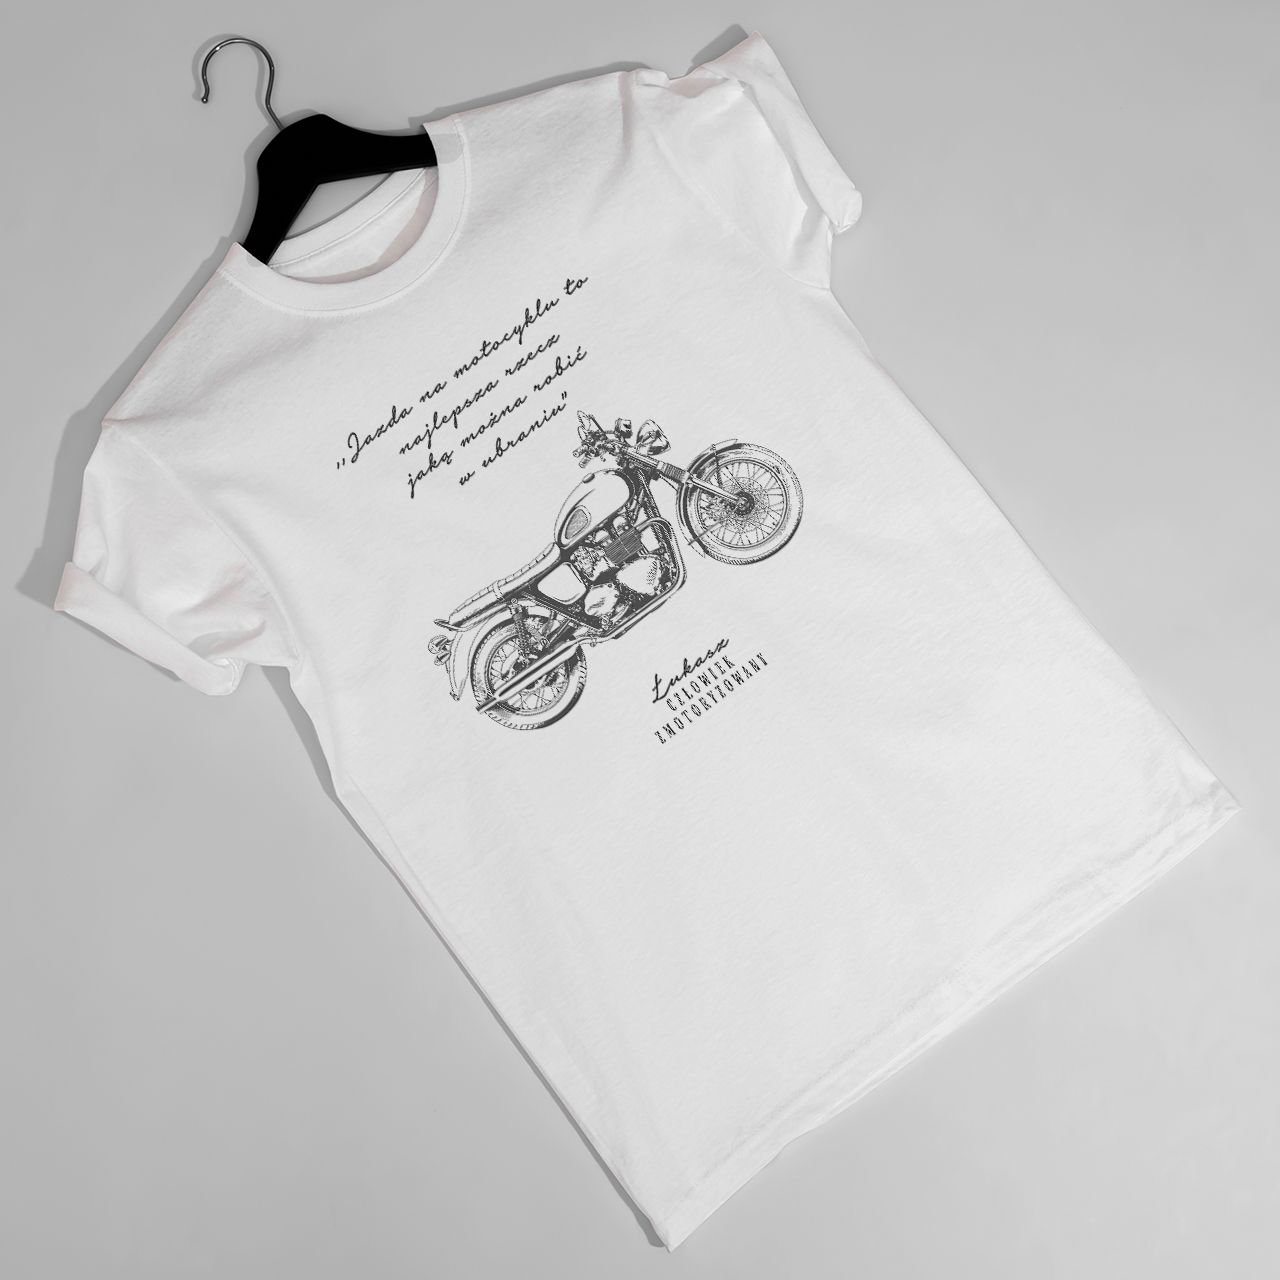 Koszulka dla motocyklisty ZMOTORYZOWANY śmieszny prezent dla motocyklisty - S